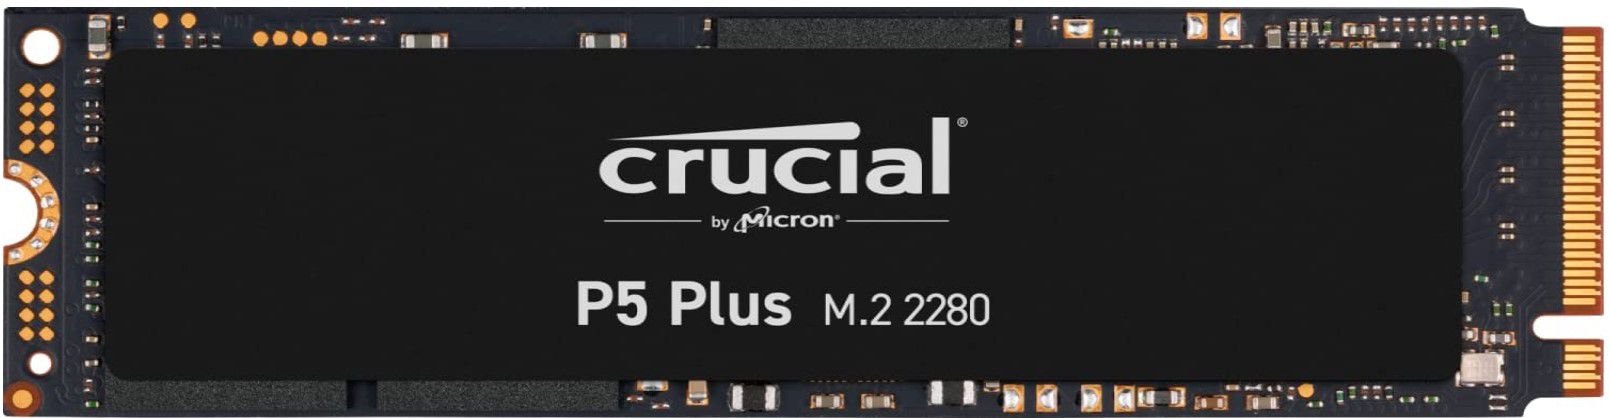 CRUCIAL P5 Plus 1TB SSD NVMe für 79,20€ (statt 114€)  Playstation 5 kompatibel